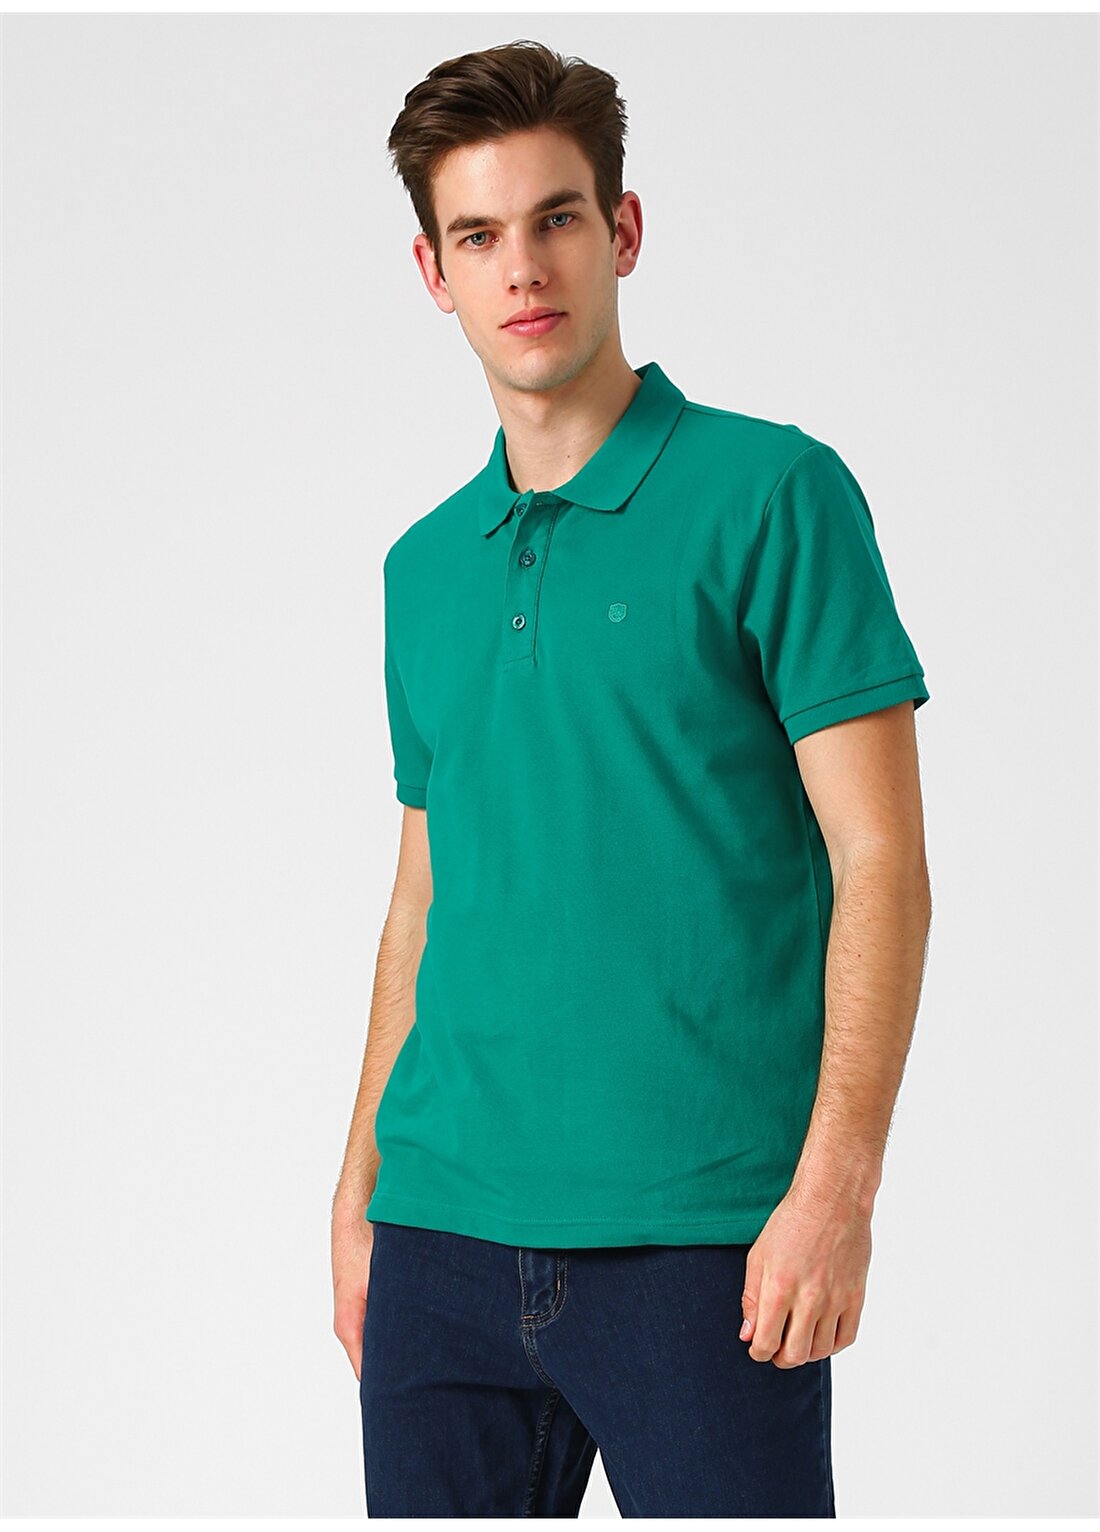 Limon Koyu Yeşil Polo T-Shirt